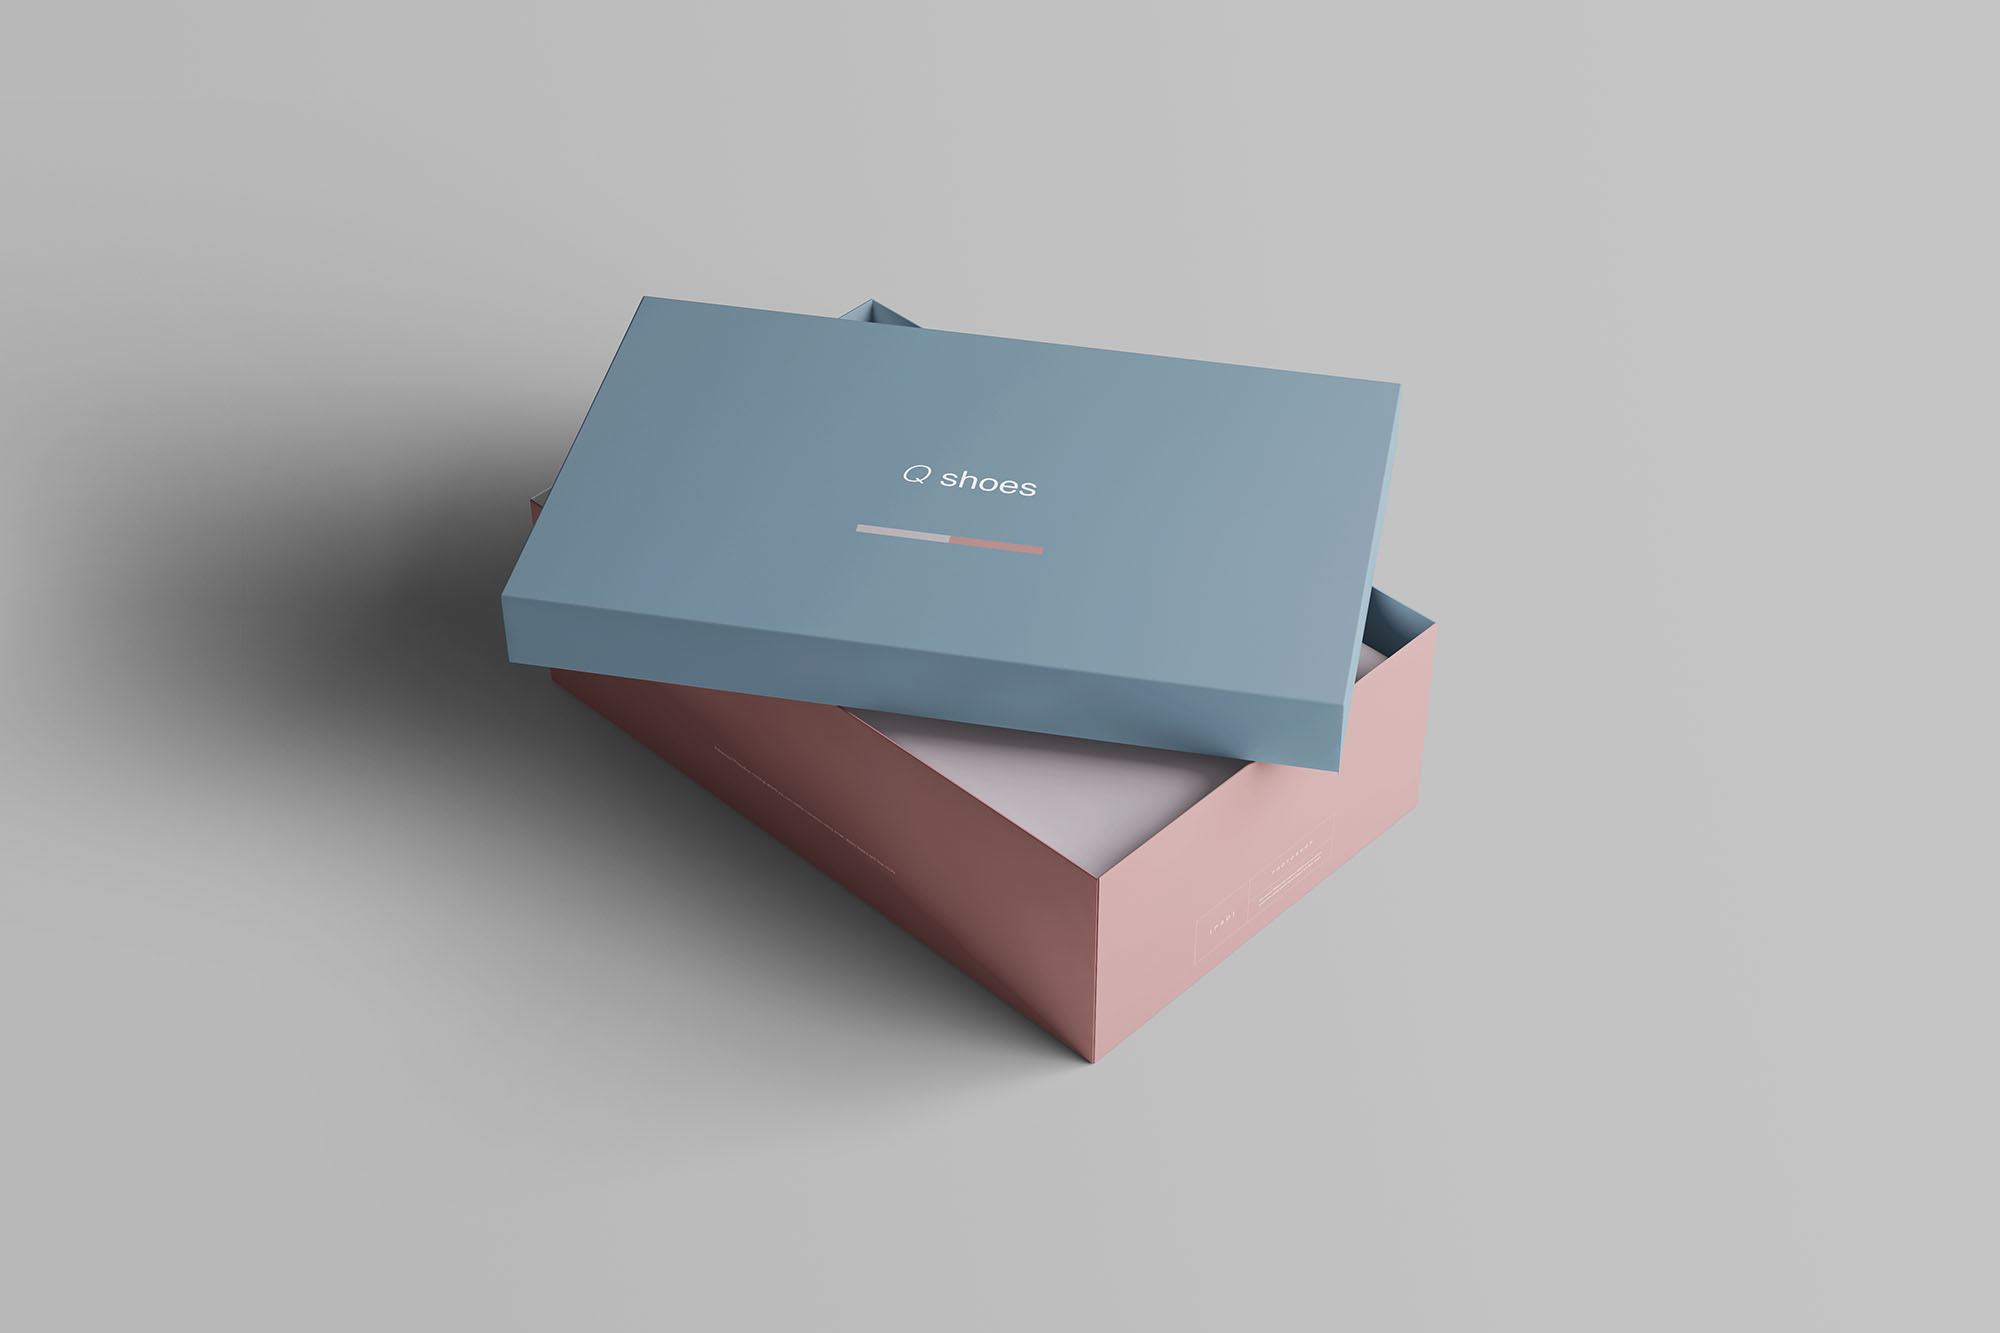 高端女鞋鞋盒外观设计图素材库精选模板 Shoe Box Mockup插图(3)